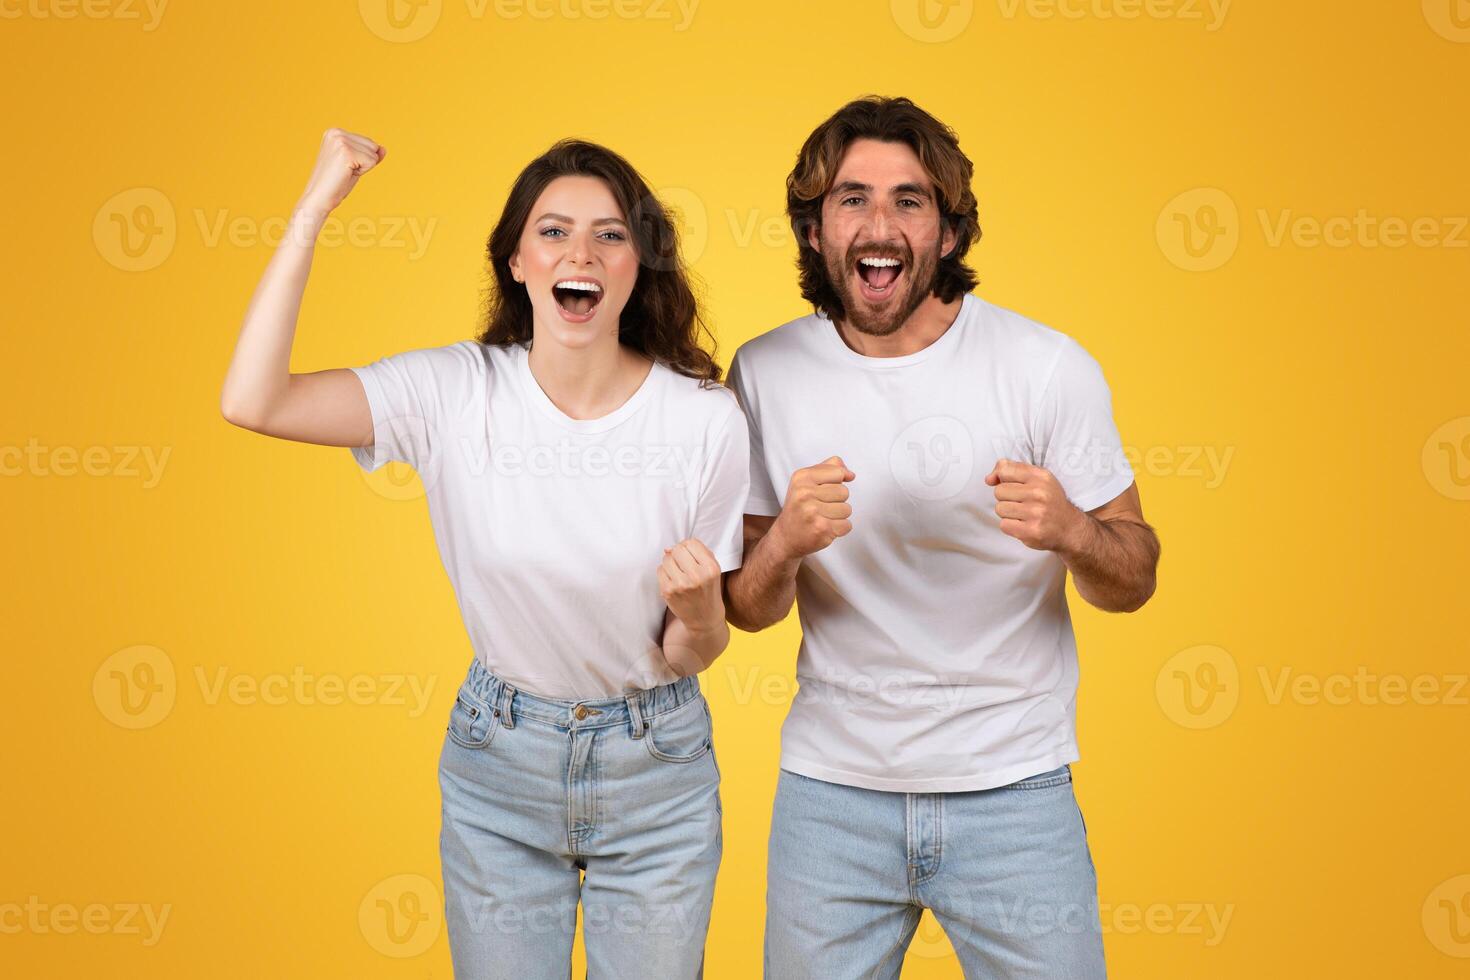 énergique Jeune couple avec élevé les poings célébrer une la victoire, exsudant joie et excitation photo